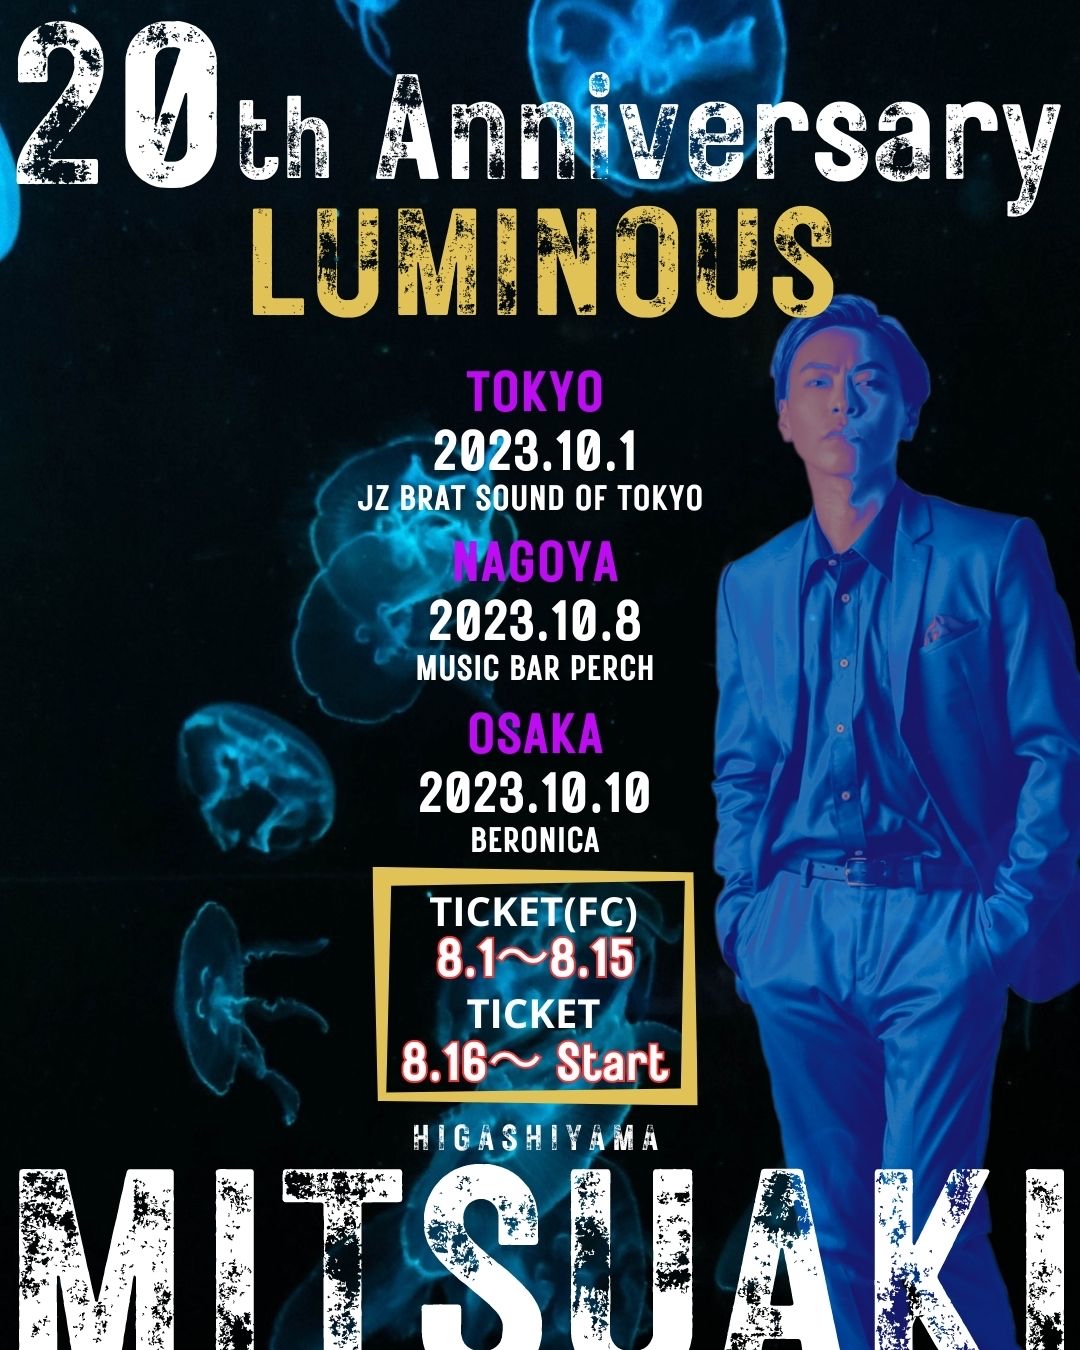 【昼公演】東山光明《MITSUAKI》 芸能活動20周年 LIVEツアー『LUMINOUS』